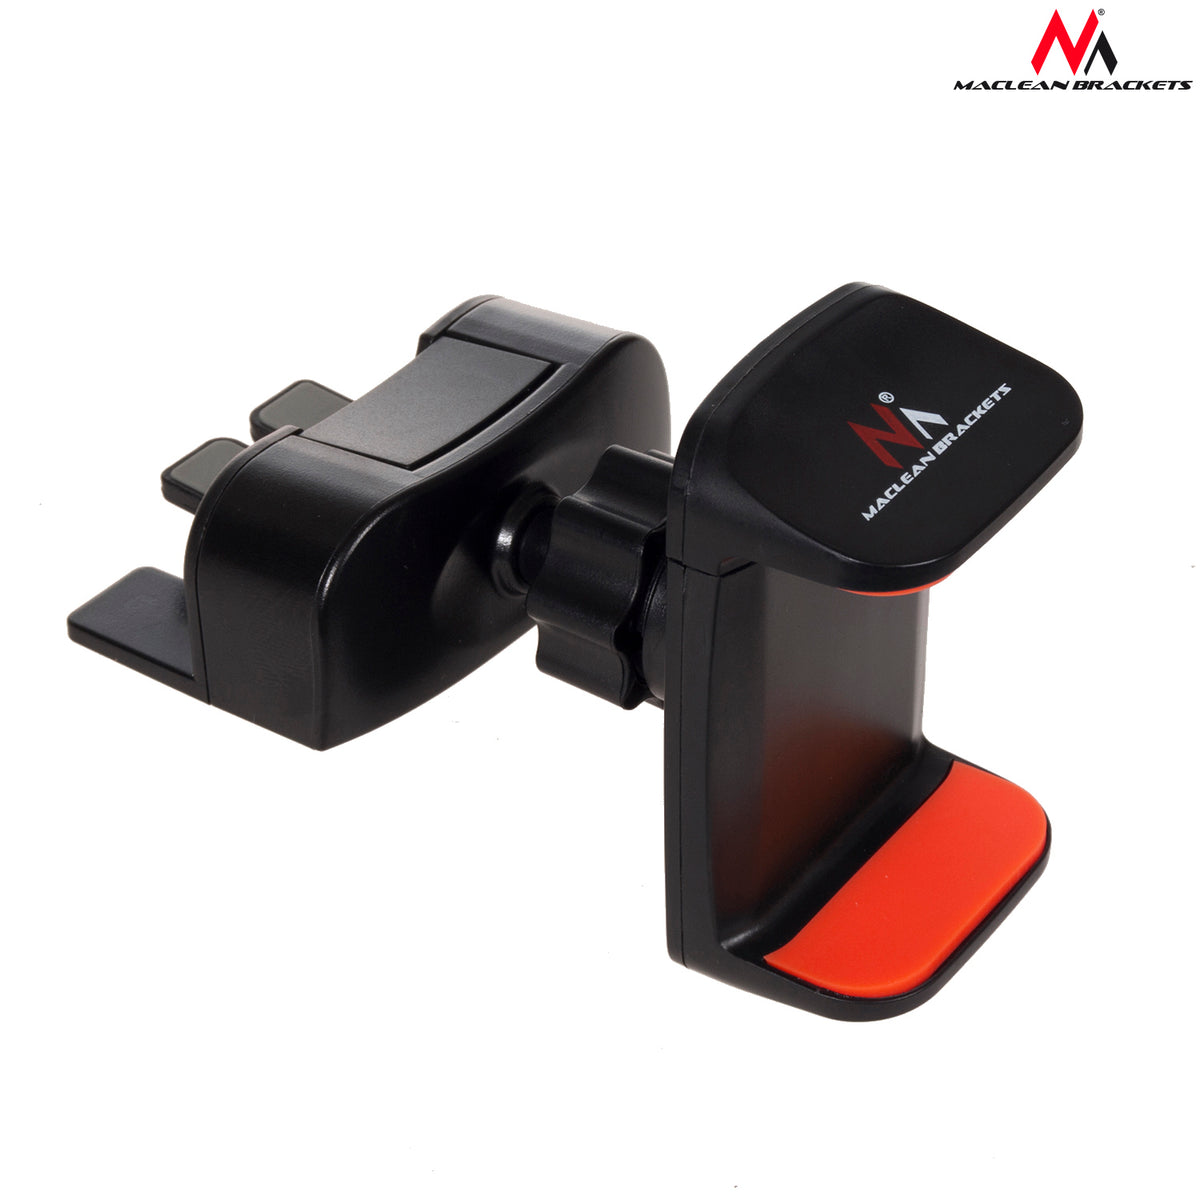 Ideal Maclean MC-734 idéal en voiture téléphones mobiles entre 3,5" à 6" taille  noir 